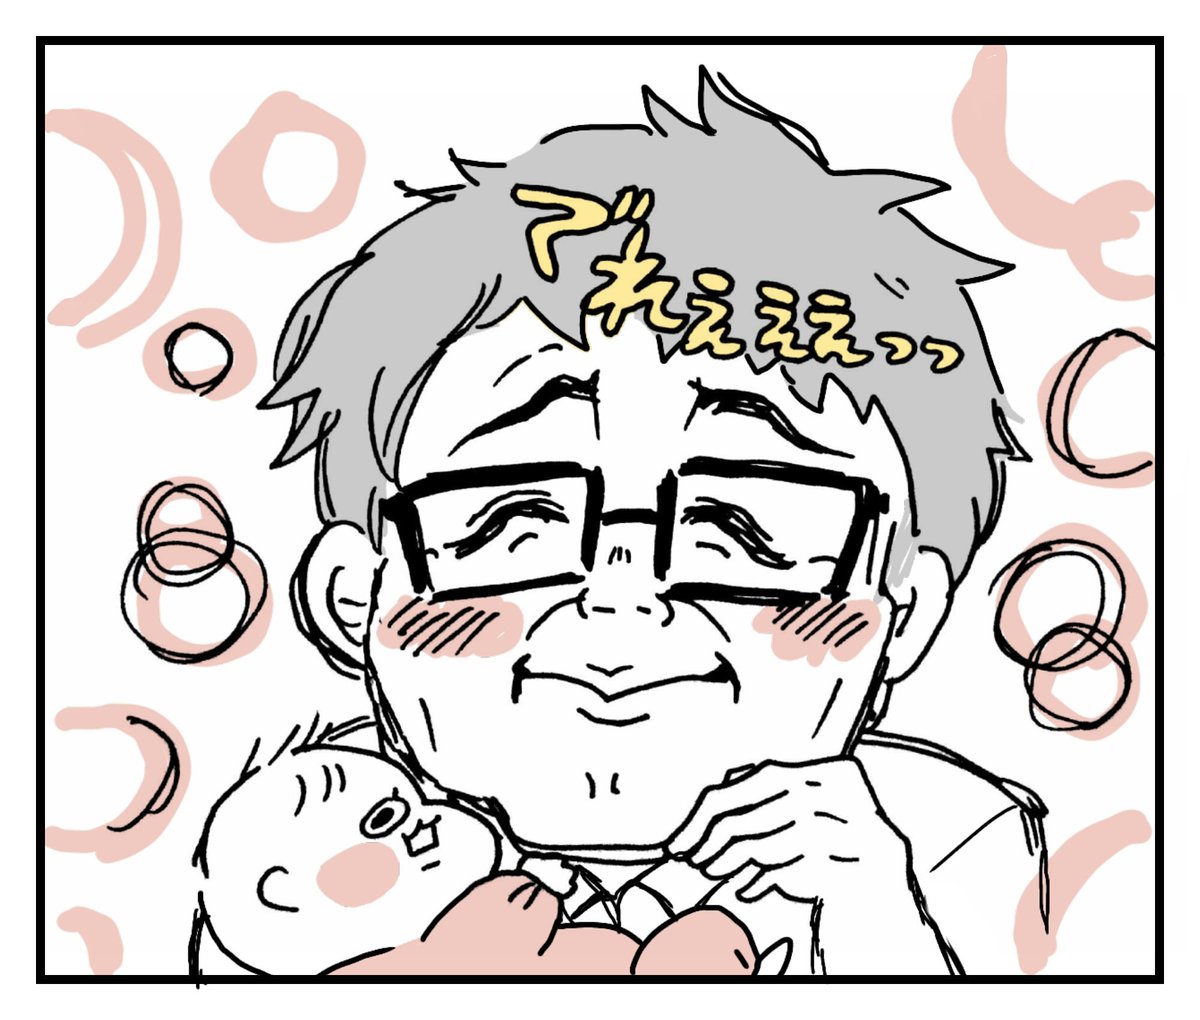 ninaru babyさまの連載、第3回が更新されています！！！！！
顔芸が多い我が家です。
よろしくお願いします☺

続きはこちら↓
せるこさん家の親バカ育児#3「パパのデレ顔」 … 